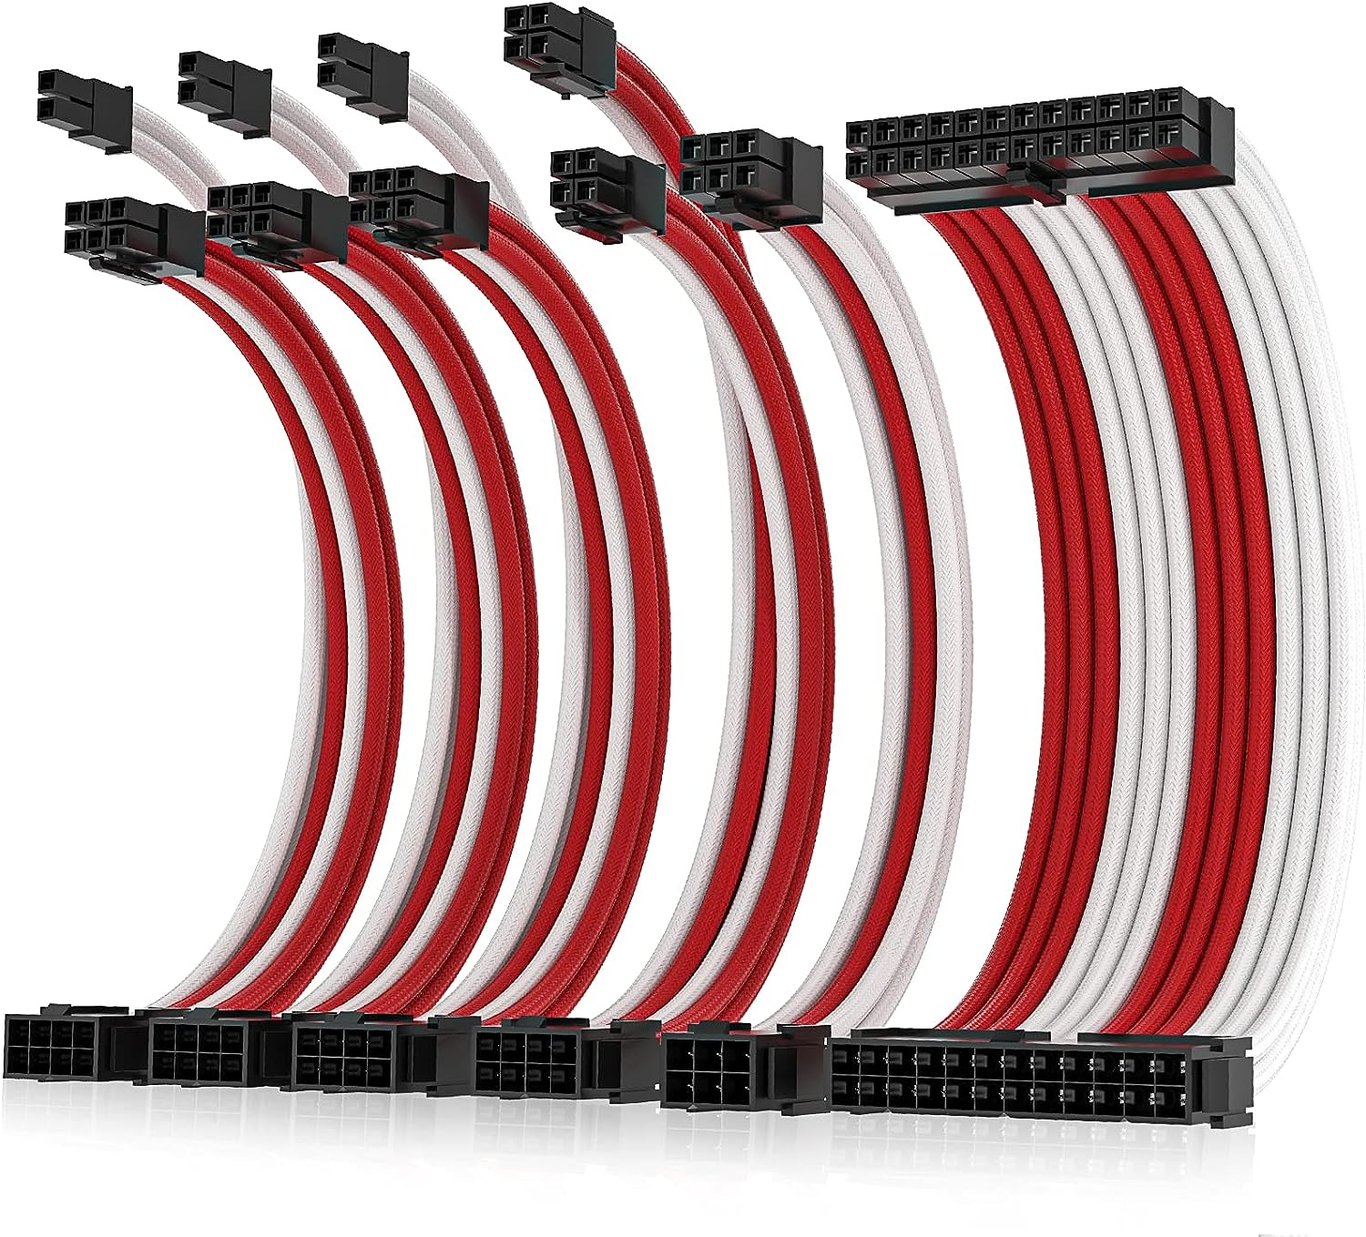 【線低價優惠】AsiaHorse Pro-6 Sleeved Extension Cable Kit - 紅白色